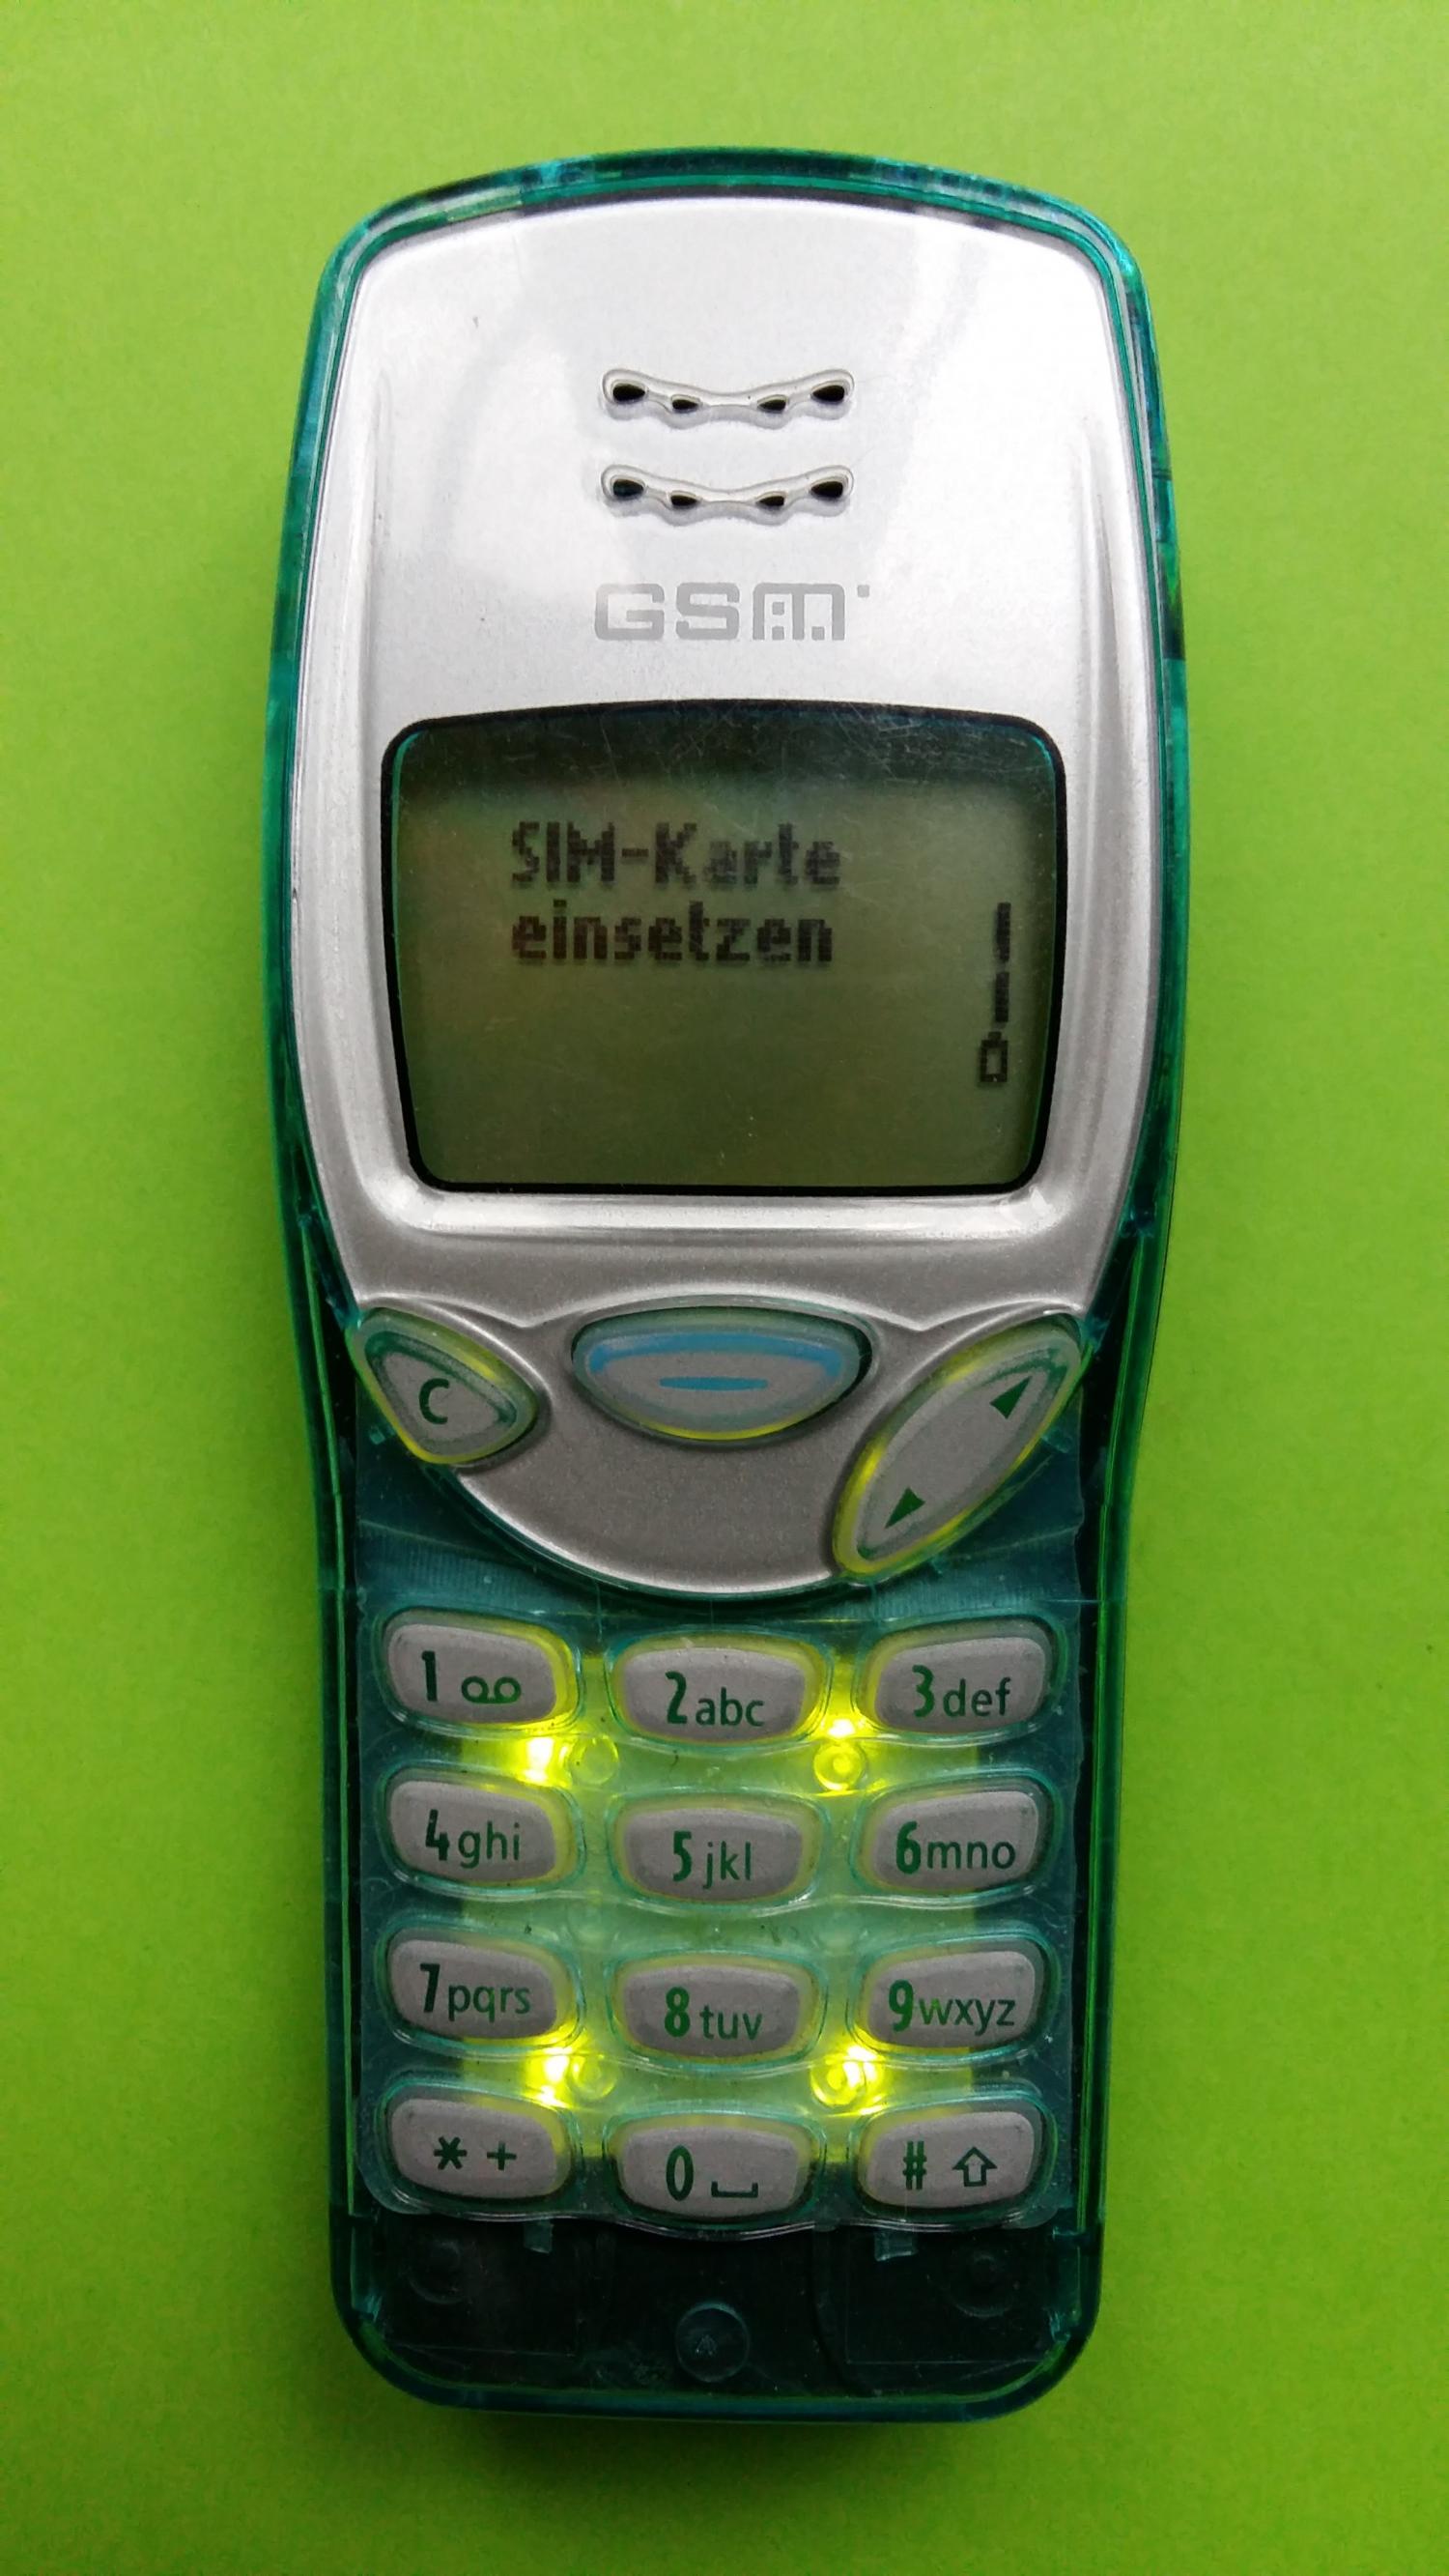 image-7303092-Nokia 3210 (27)1.jpg